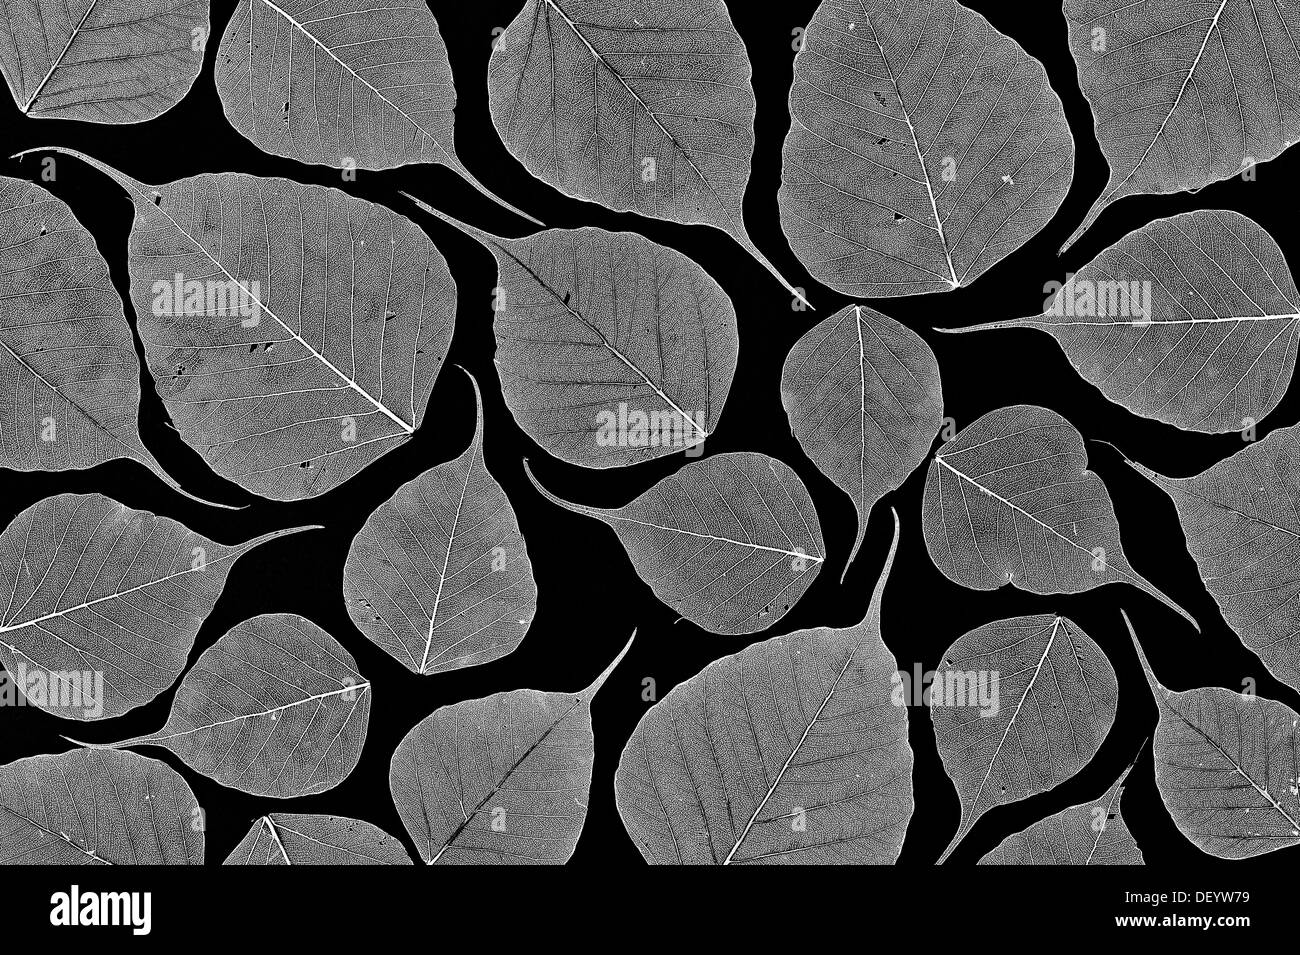 Ficus Religiosa. Skelettstruktur von Heiligen Baum Feigenblatt / Bodhi Baum Blatt auf schwarzem Hintergrund. Muster. Monochrom Stockfoto